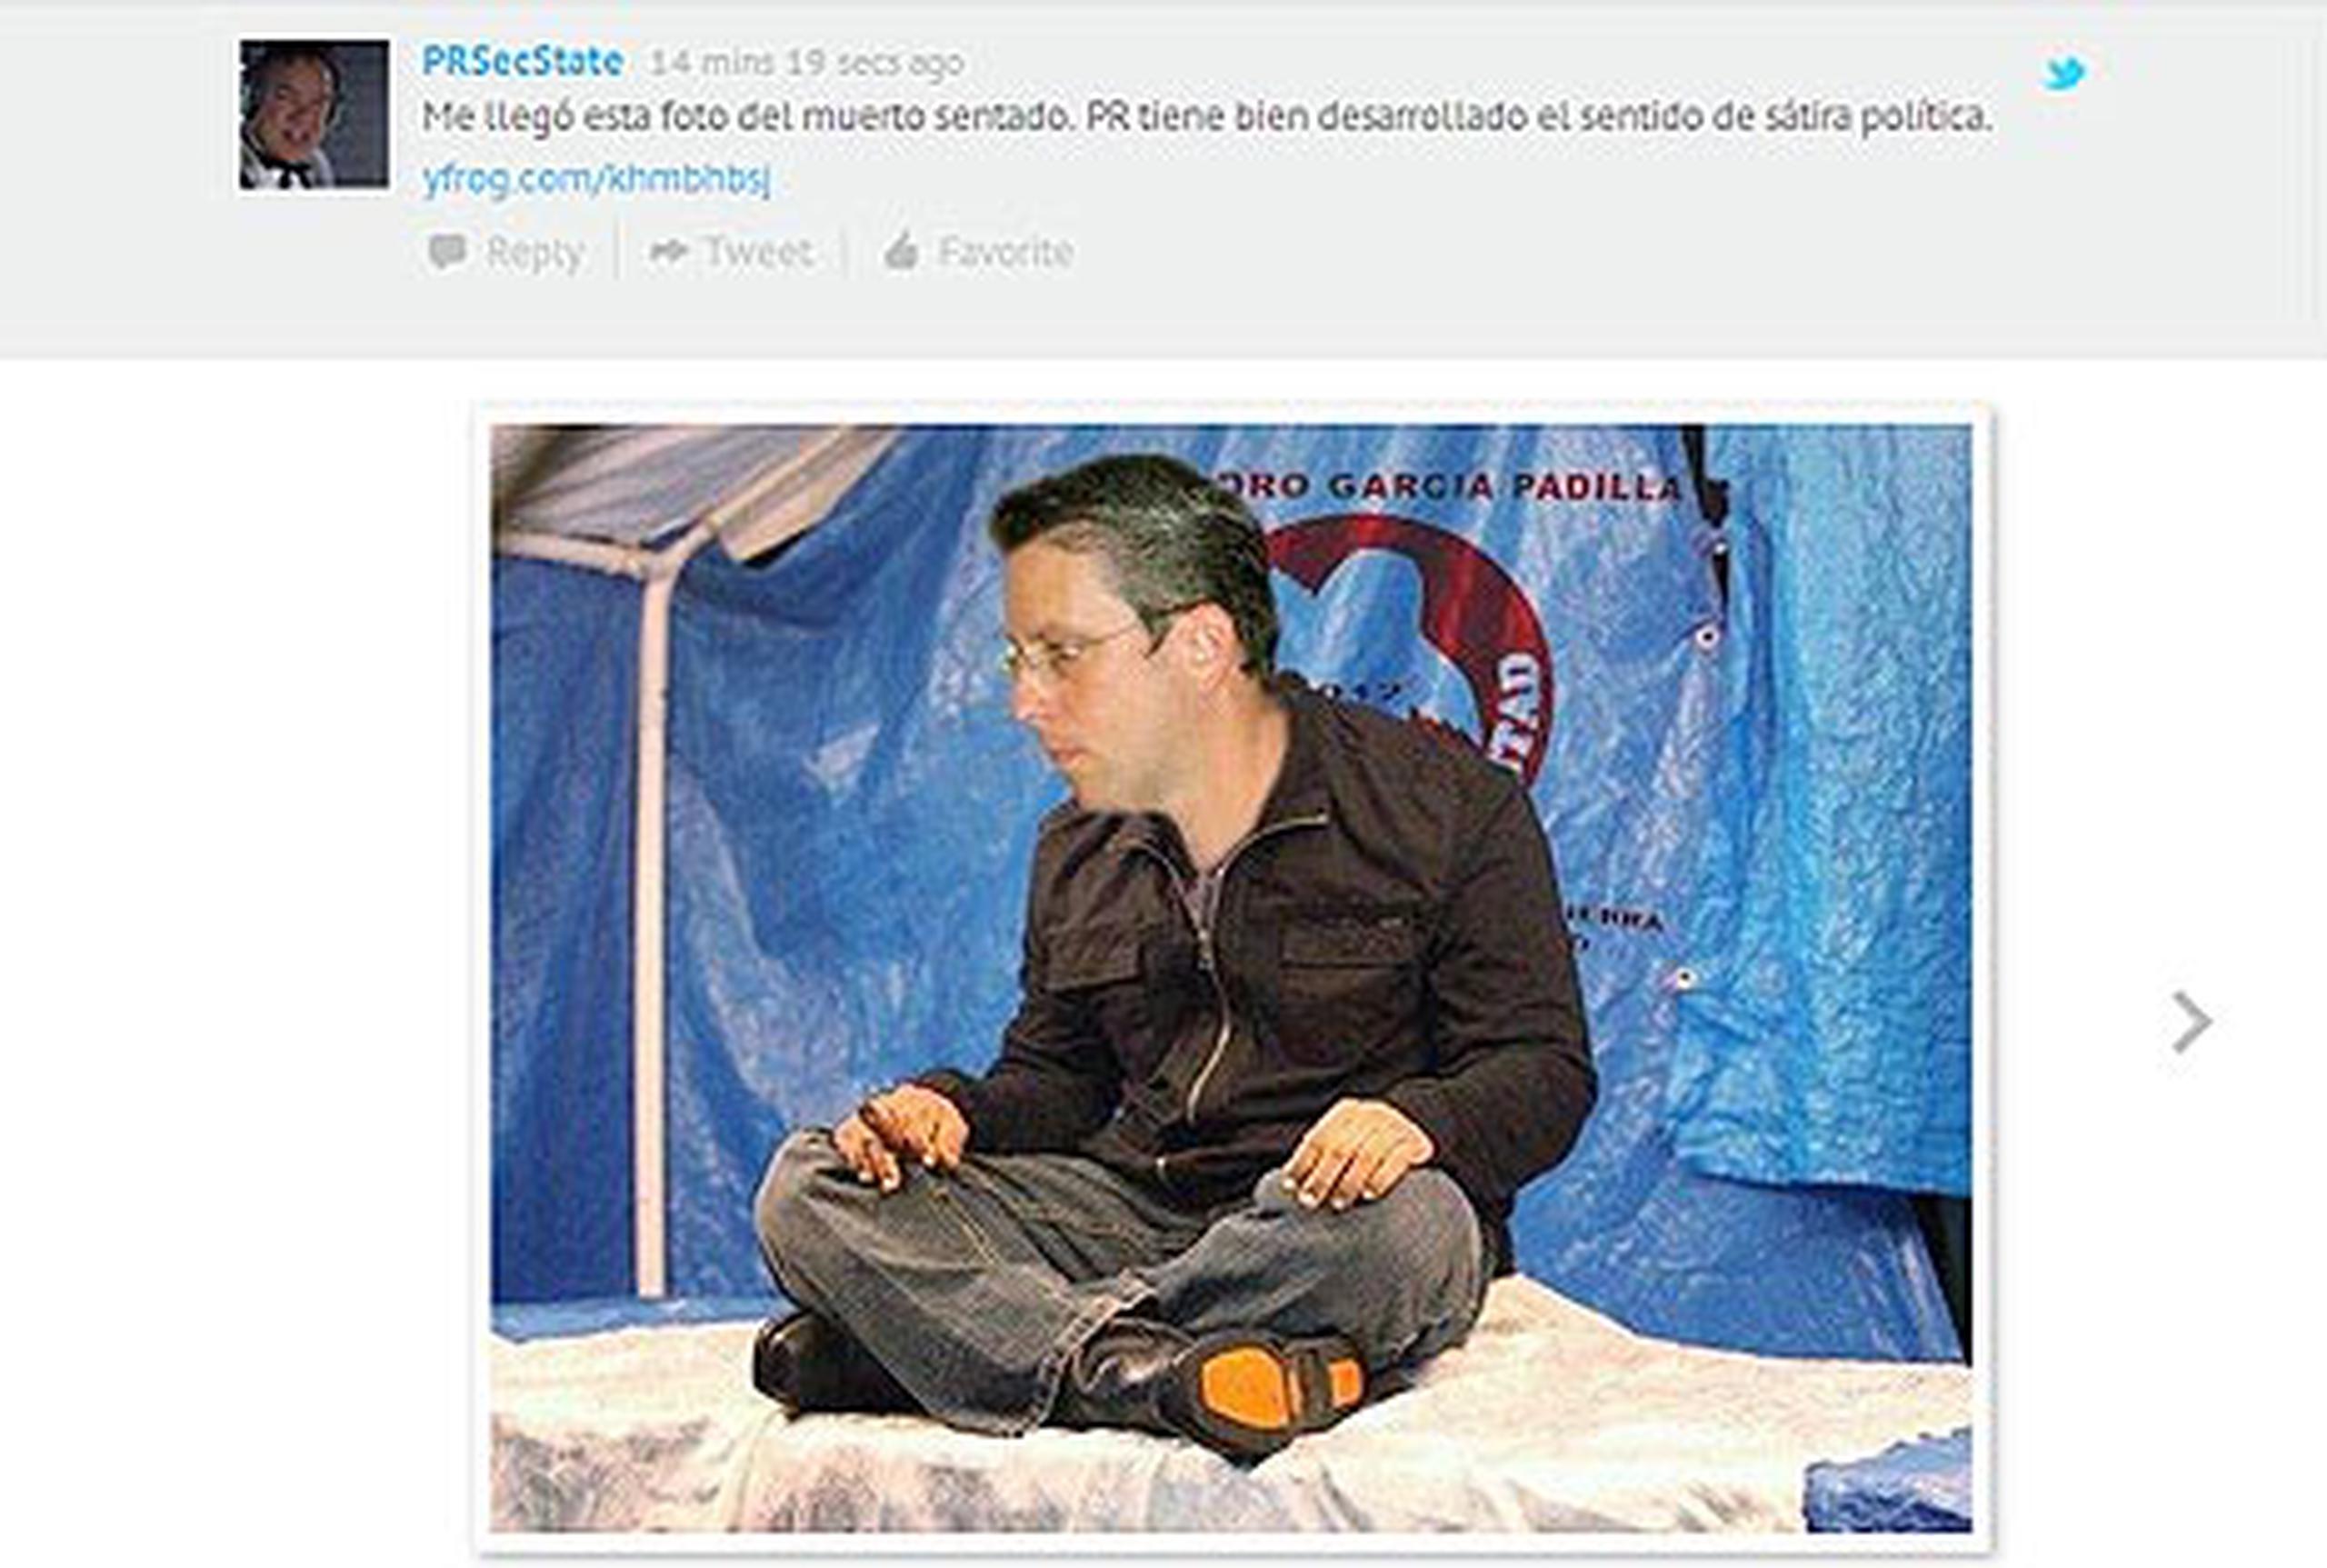 El Secretario de Estado compartió un fotomontaje de Alejandro García Padilla como el muerto sentado a sólo un día de haber enterrado al verdadero muerto sentado. (Twitter)